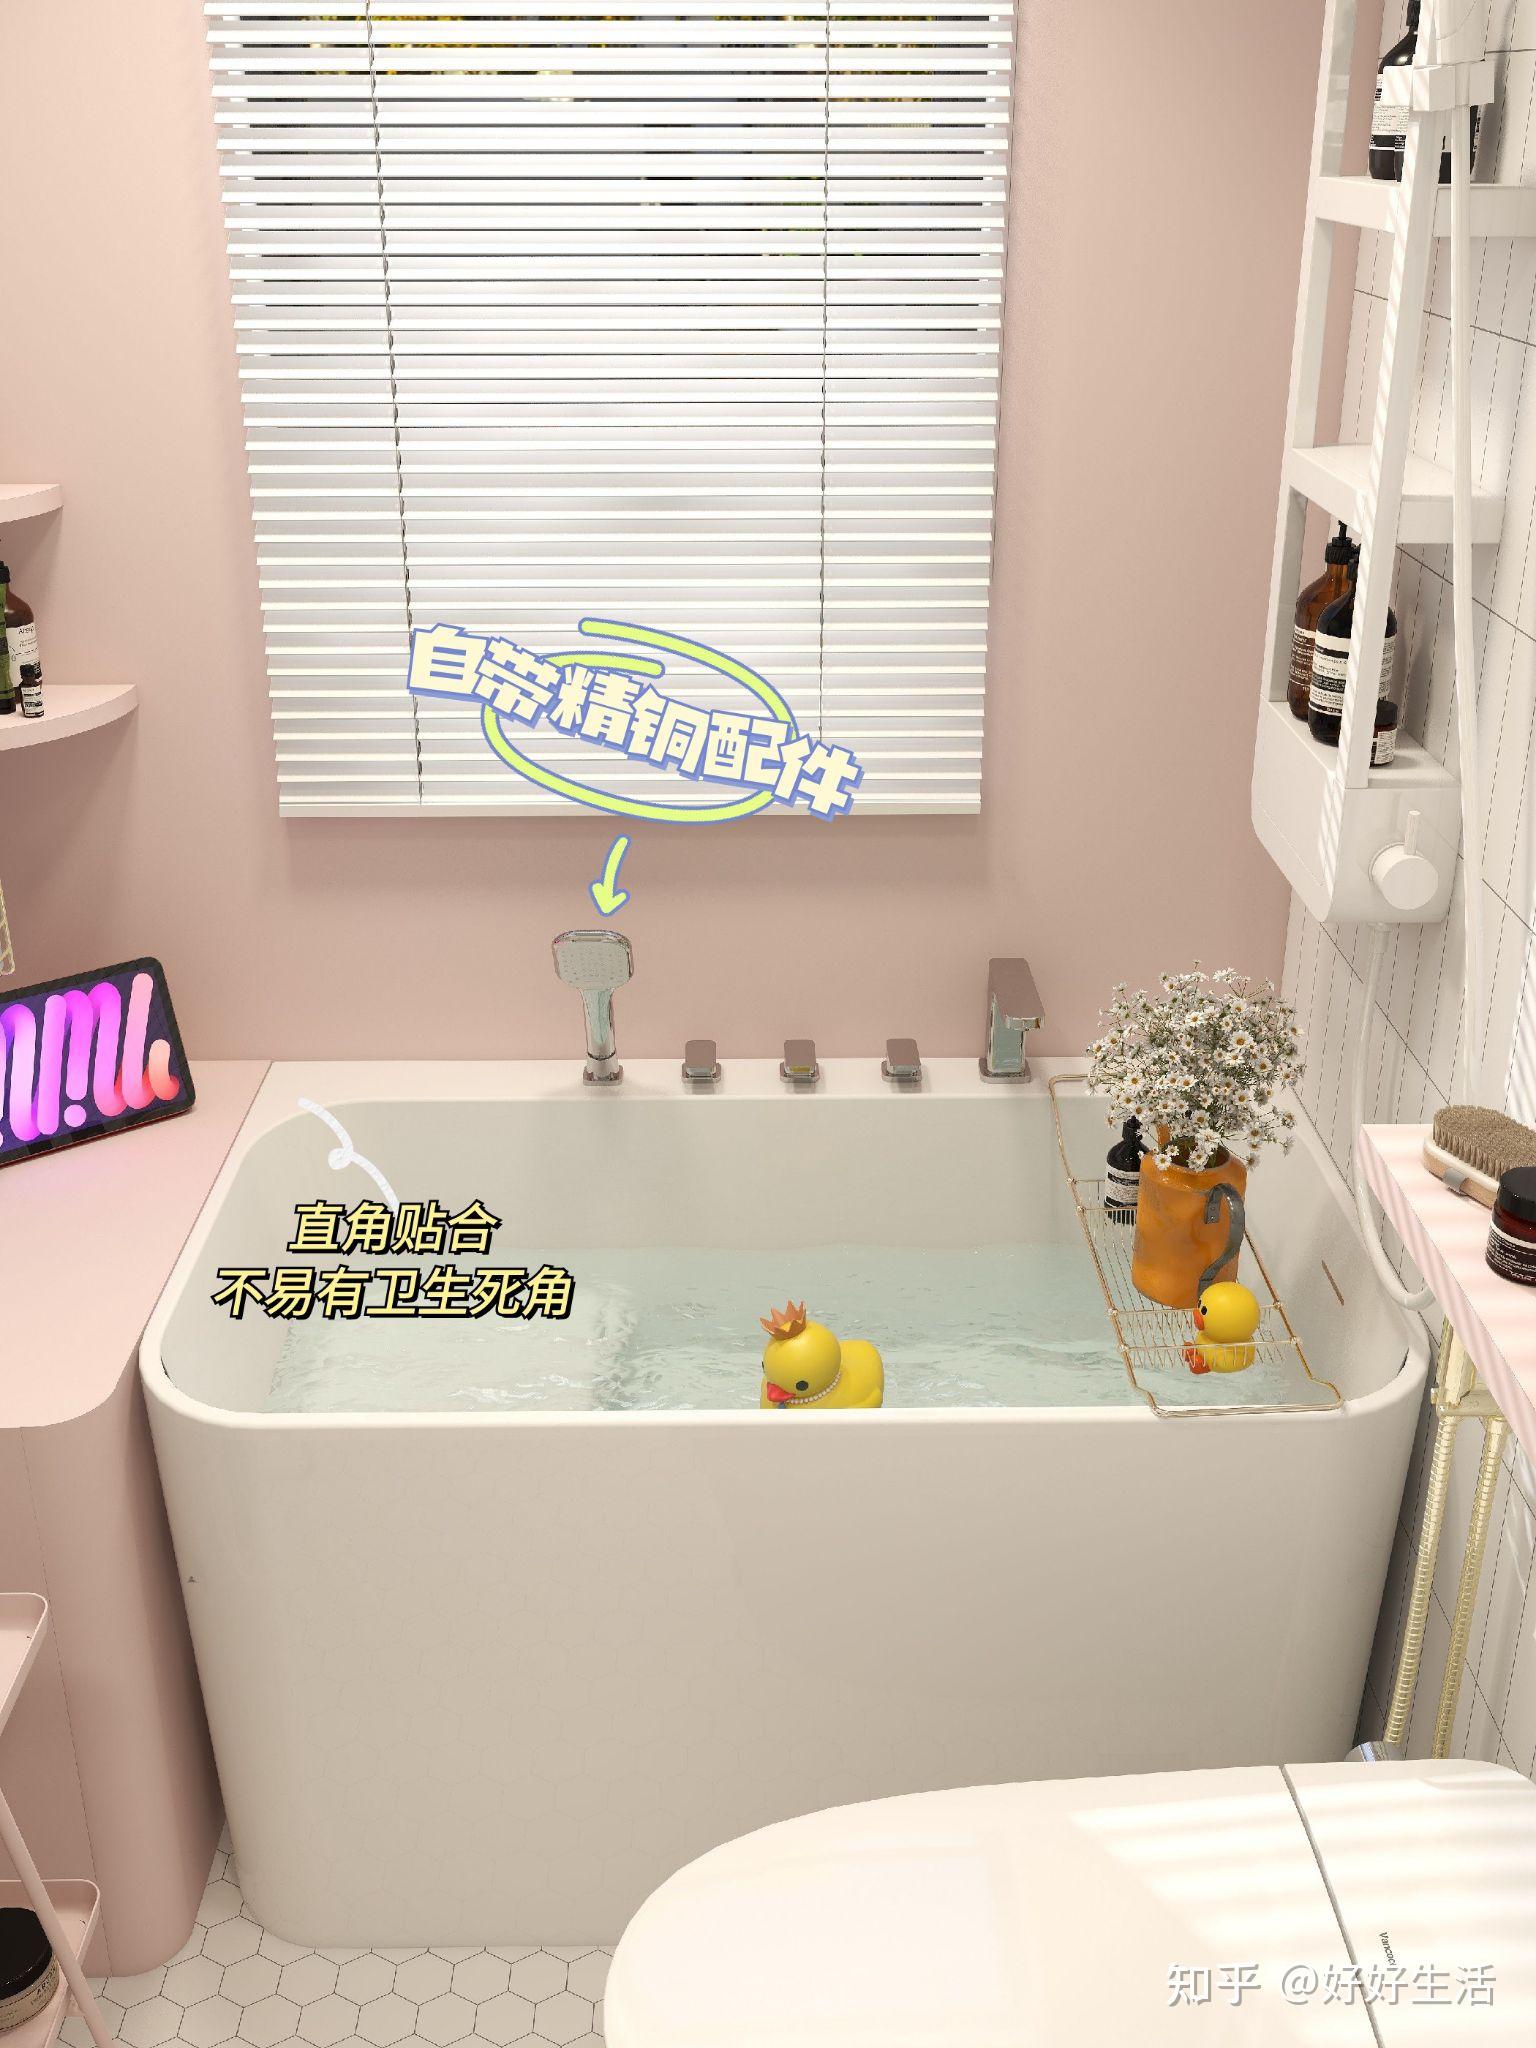 浴室装个嵌入式浴缸泡澡非常赞 - 果敢浴缸设计效果图 - 每平每屋·设计家